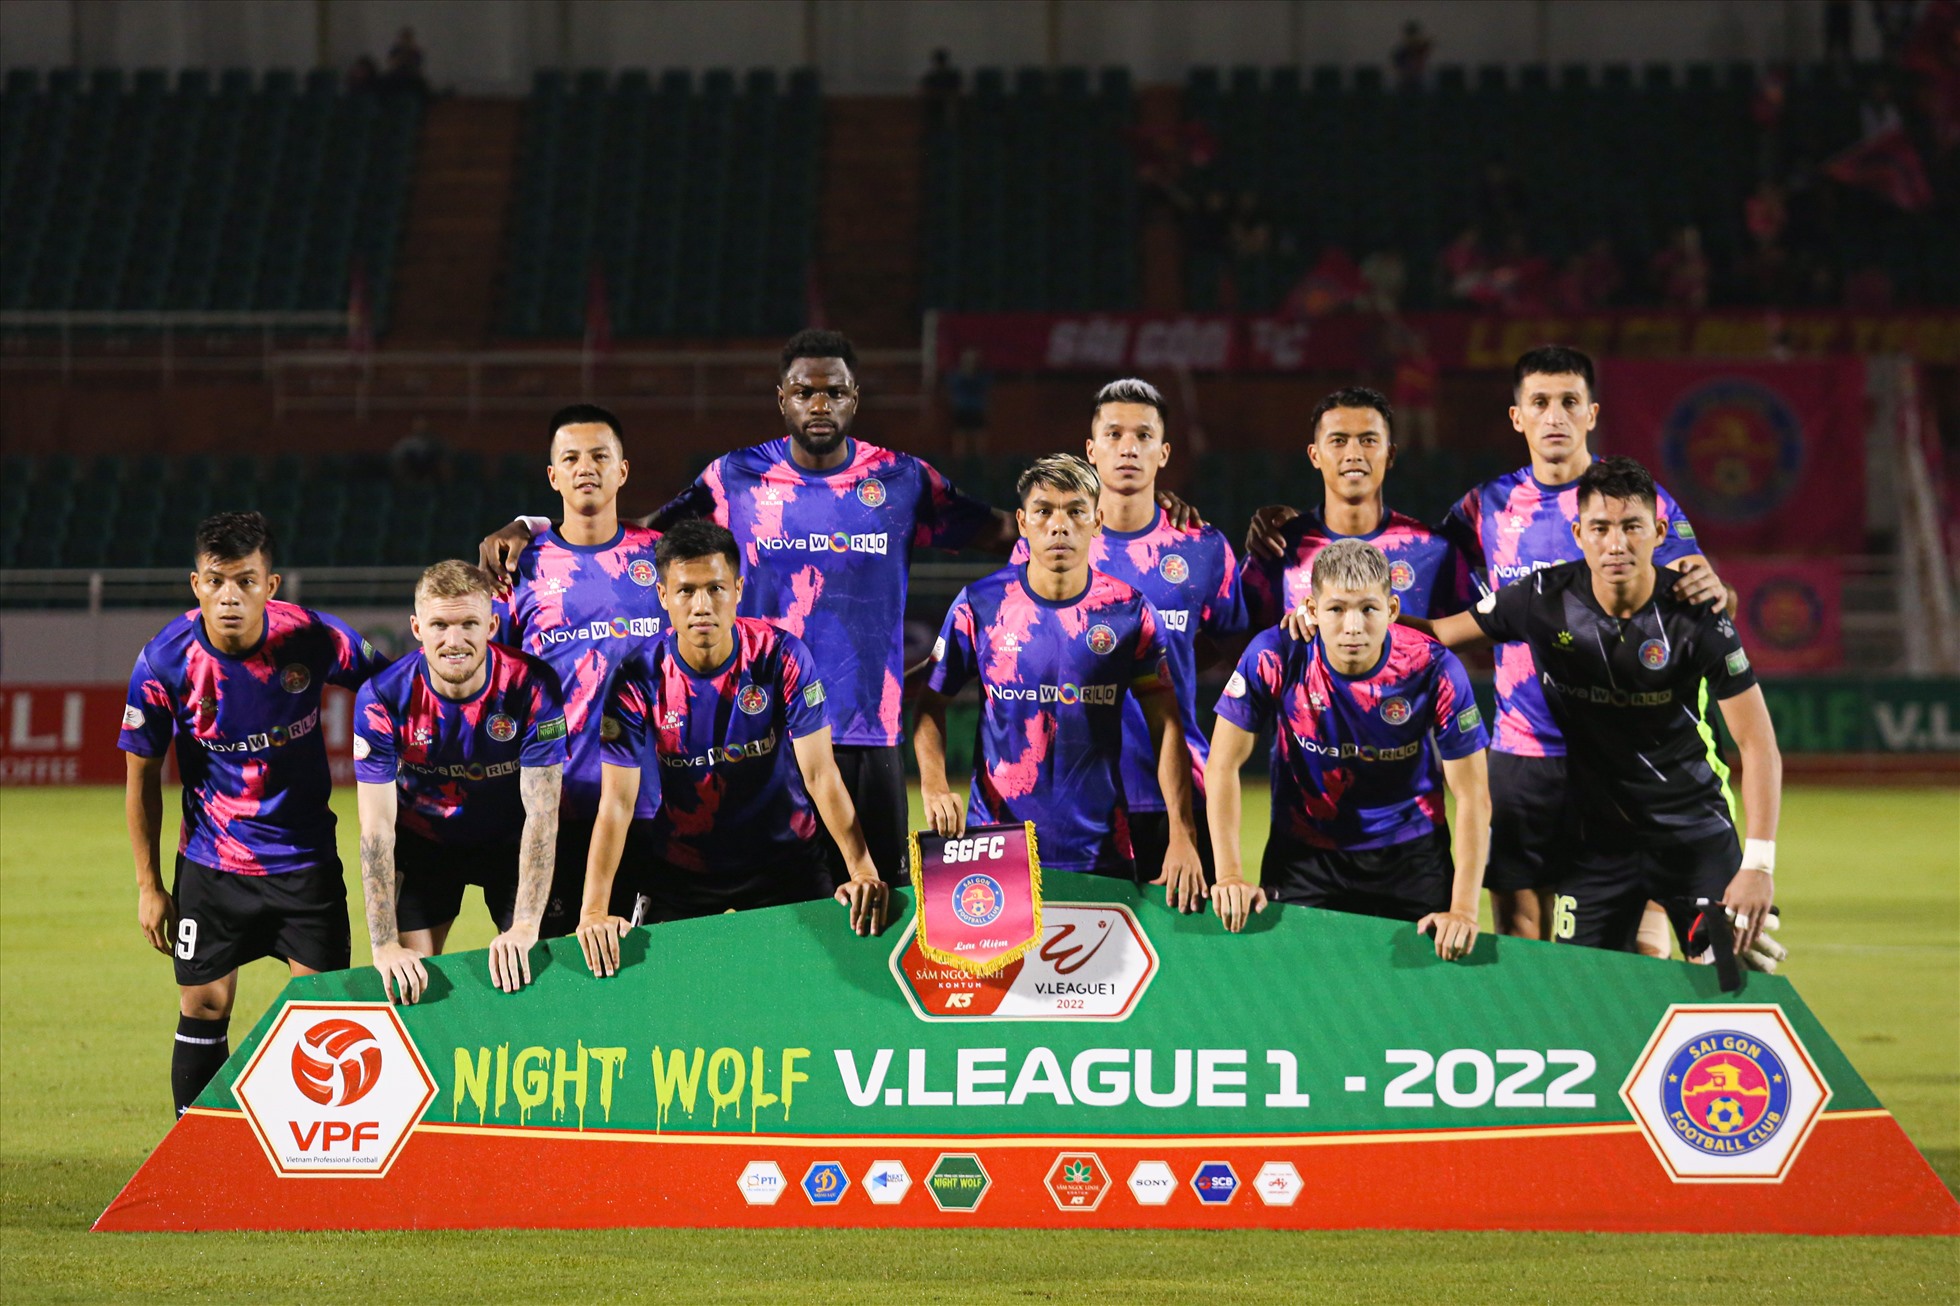 Tối 8.10, câu lạc bộ Sài Gòn tiếp đón Thanh Hoá trong khuôn khổ vòng 18 Night Wolf V.League 2022. Đội chủ nhà được đánh giá cao hơn với chuỗi thành tích 4 trận bất bại liên tiếp.